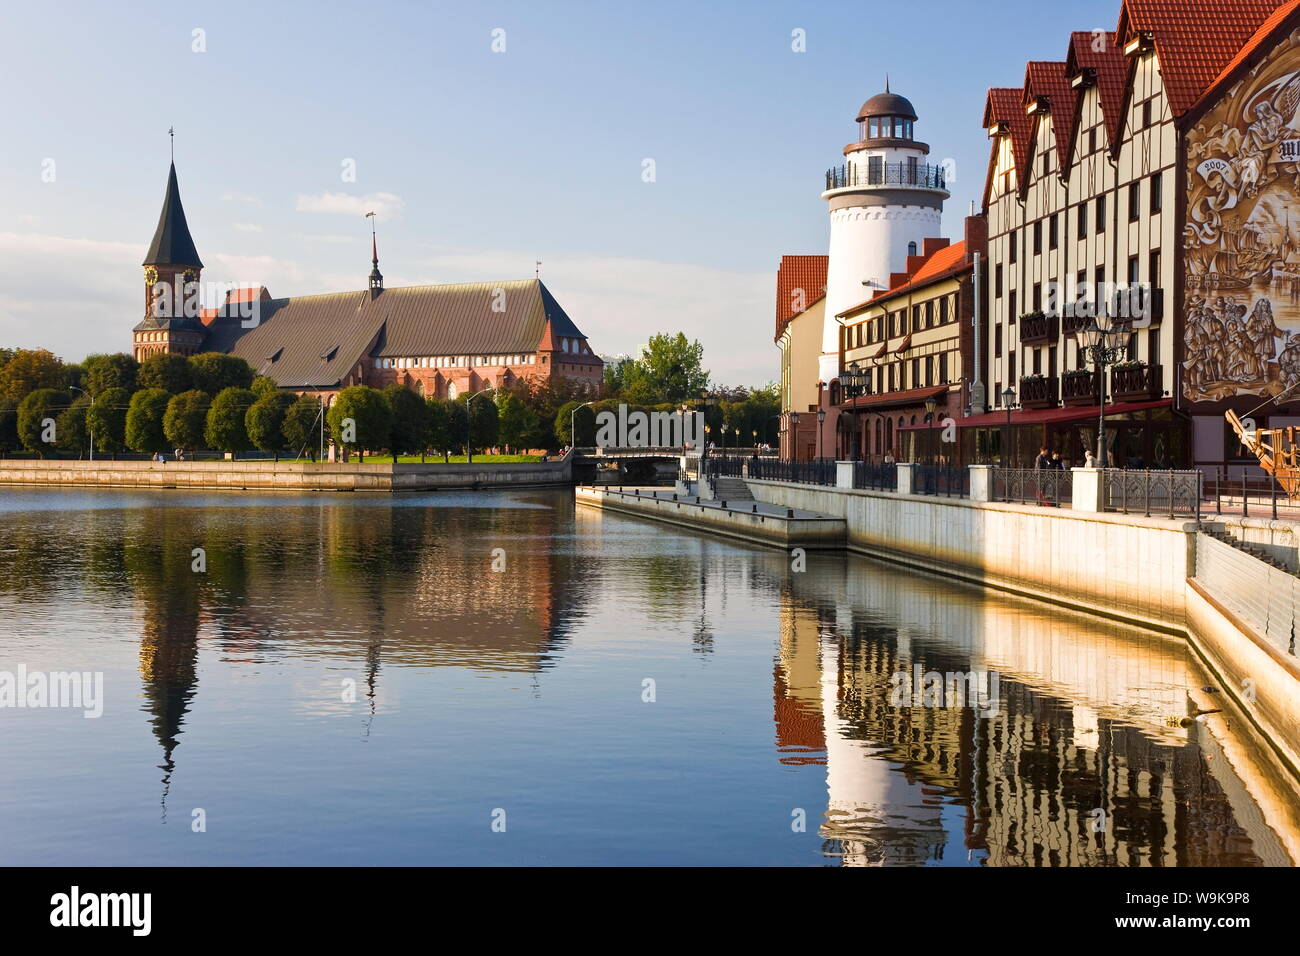 Kathedrale und Fischdorf, einem modernen Gehäuse, Hotel und Restaurant Entwicklung, Kaliningrad (Königsberg), Russland, Europa Stockfoto